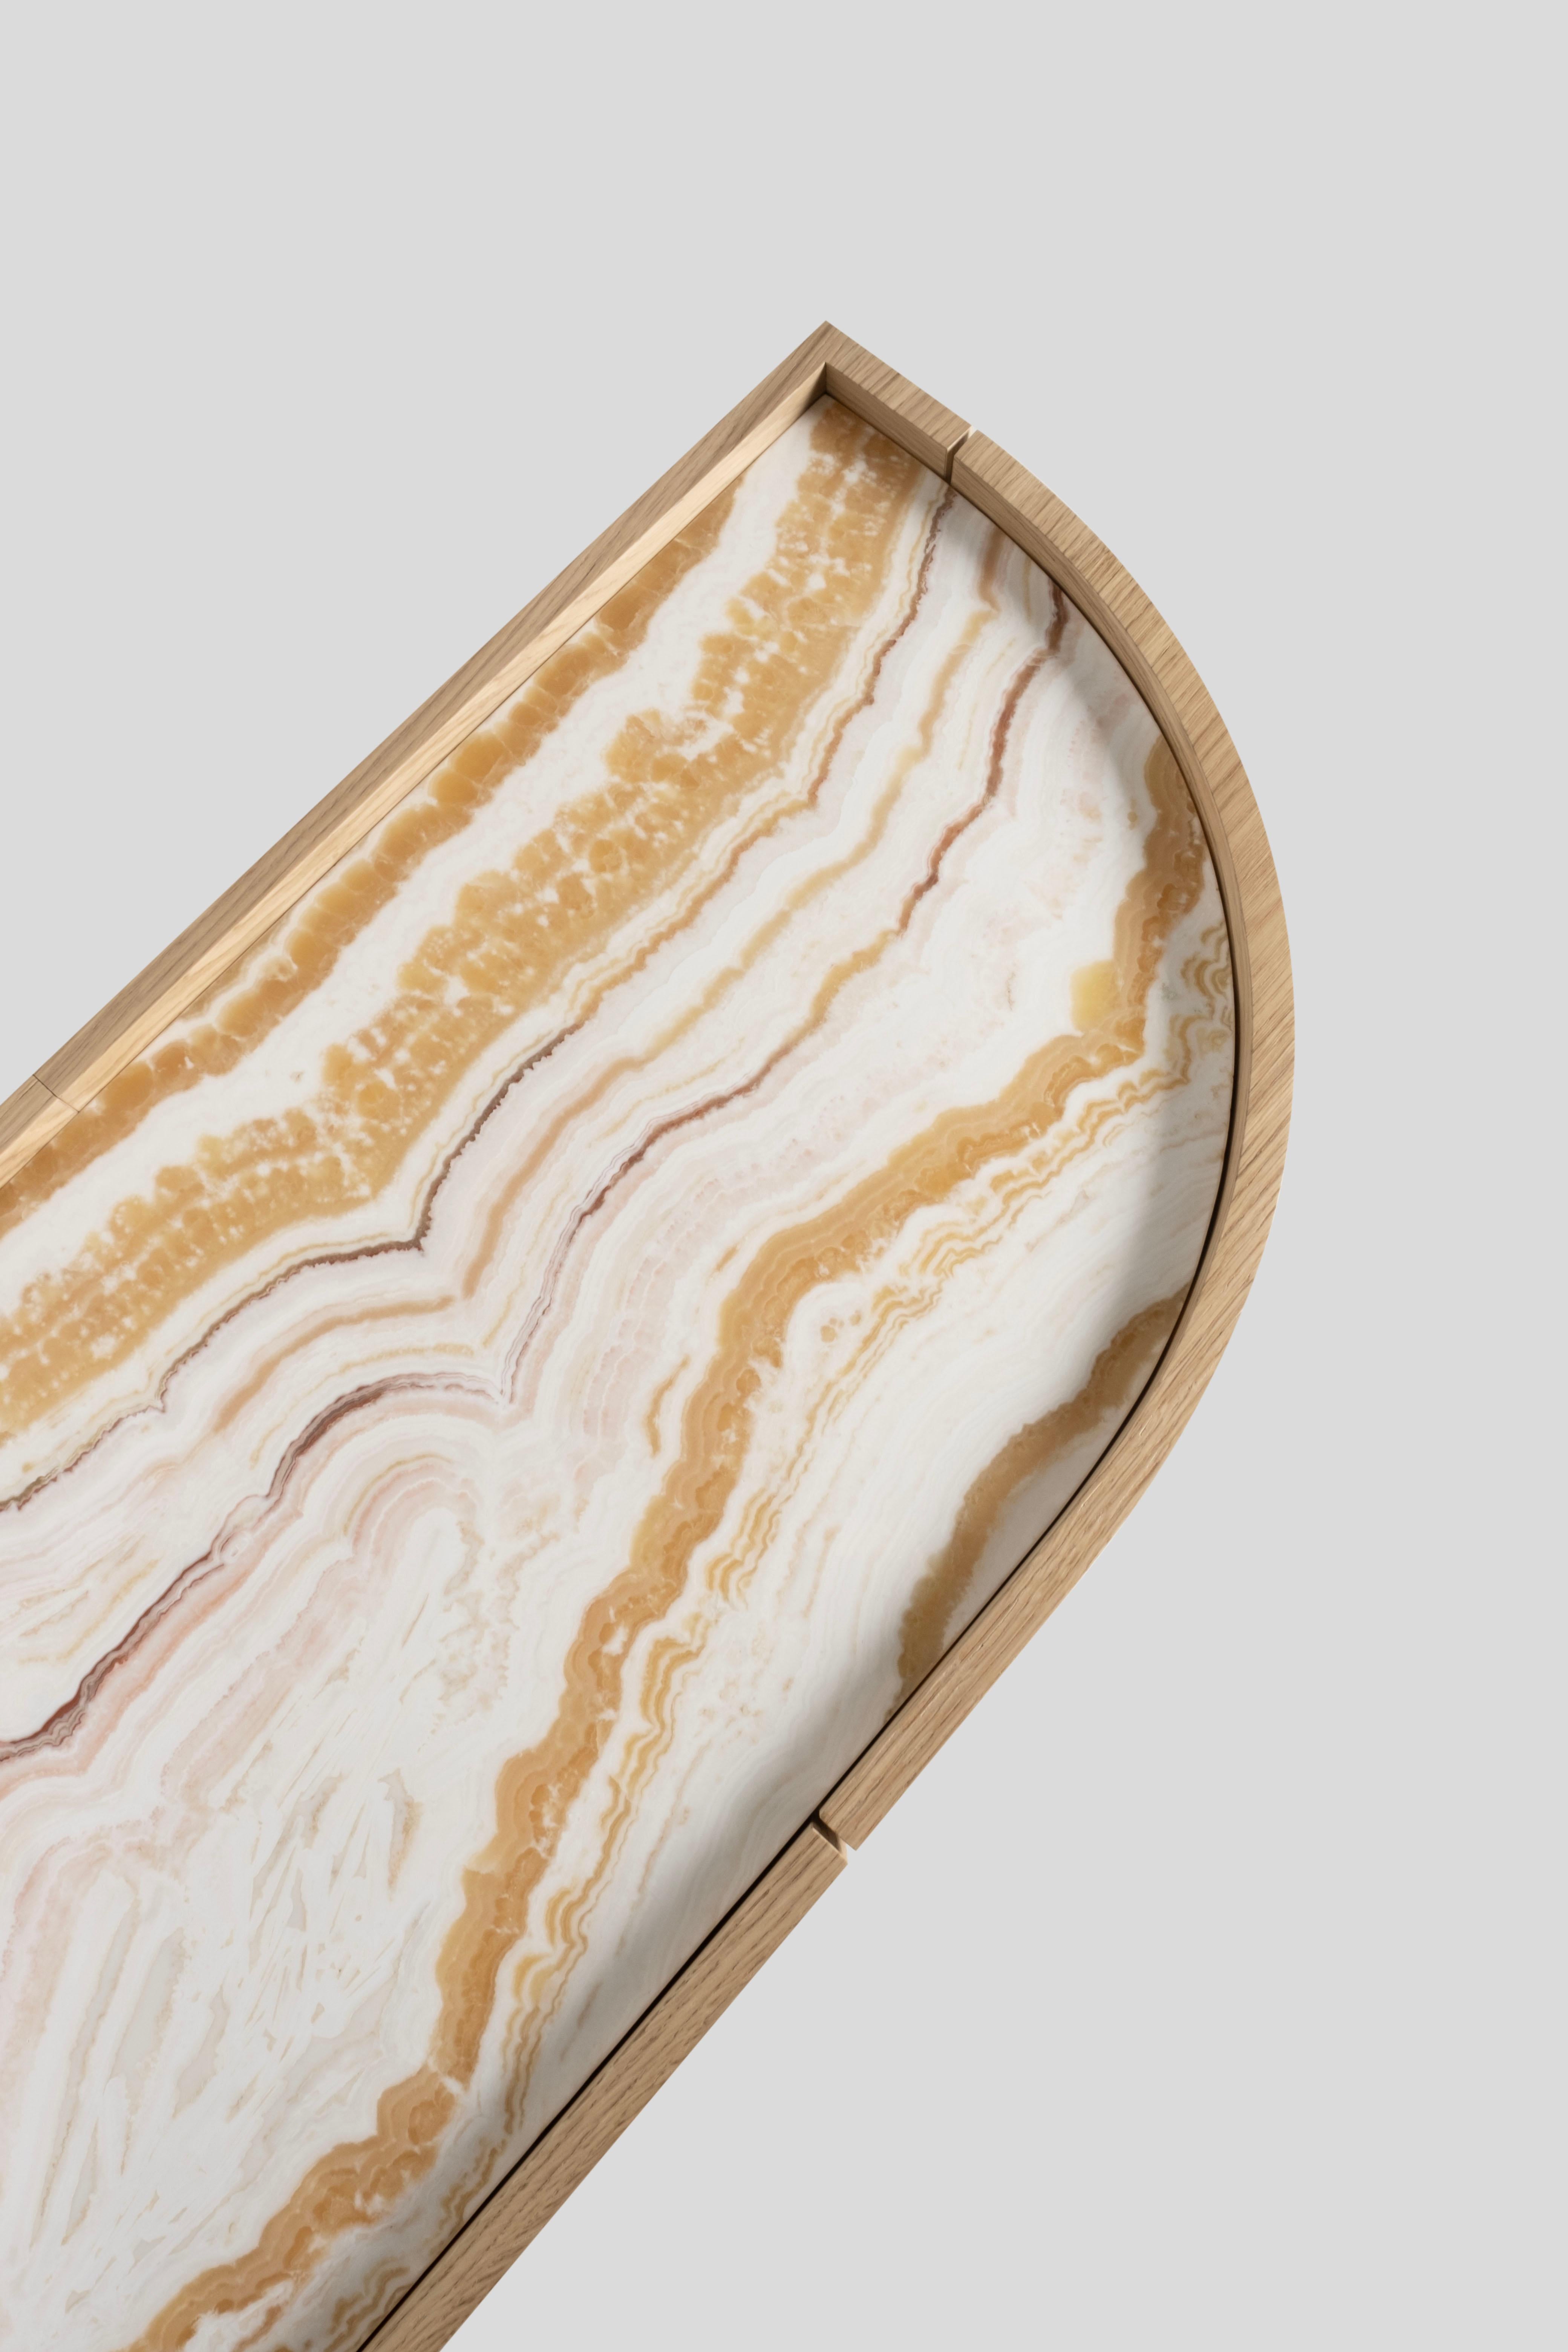 Modern Olival Sideboard, Oak, Onyx, Brass, Handmade in Portugal by Greenapple For Sale 3